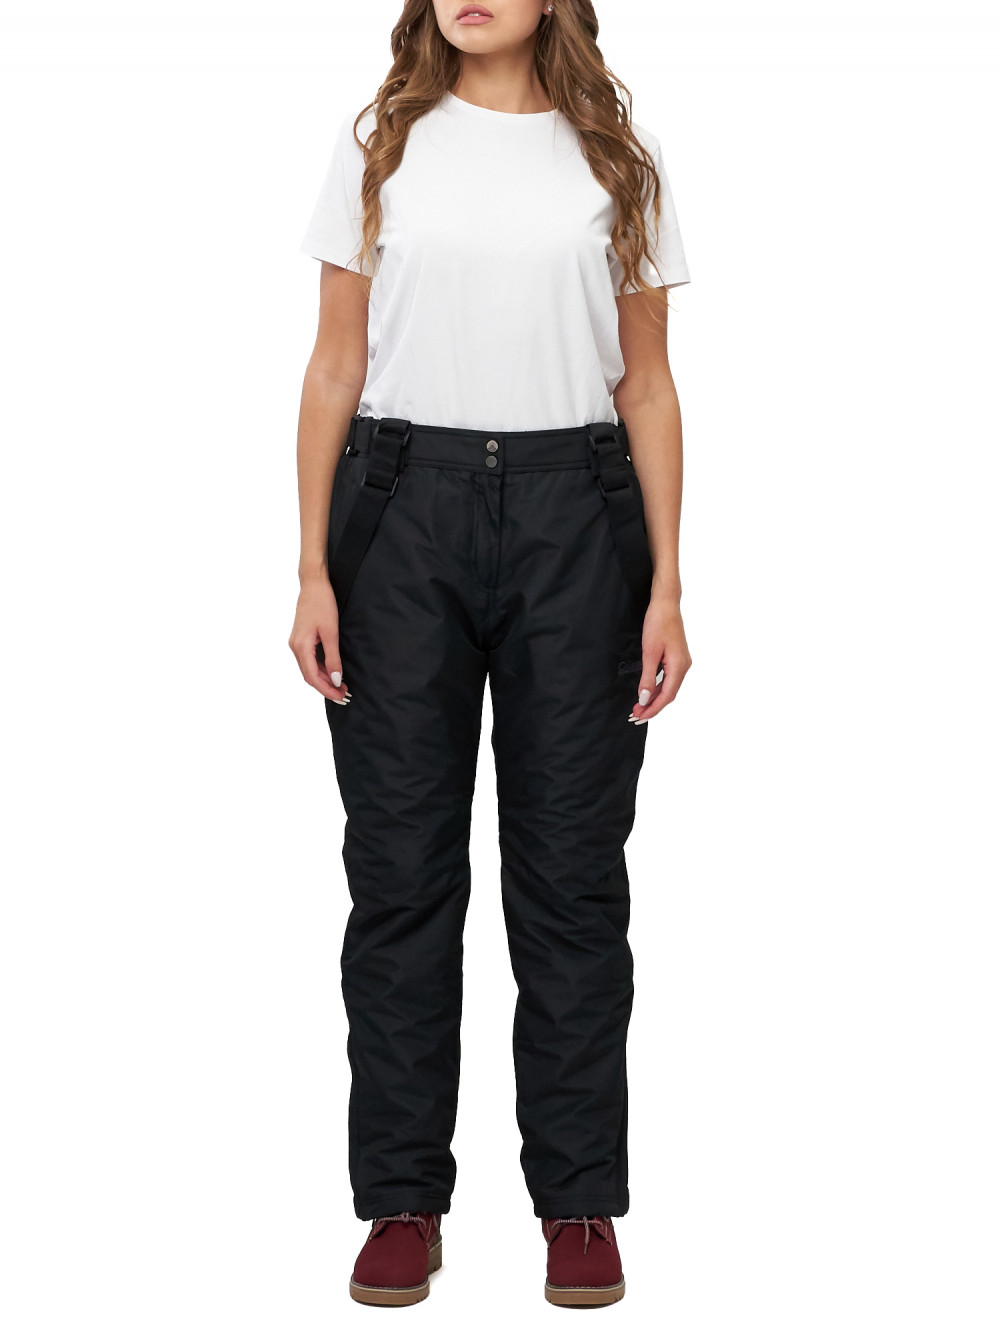 Полукомбинезон брюки горнолыжные женские big size AD66413Ch черного цвета, 58